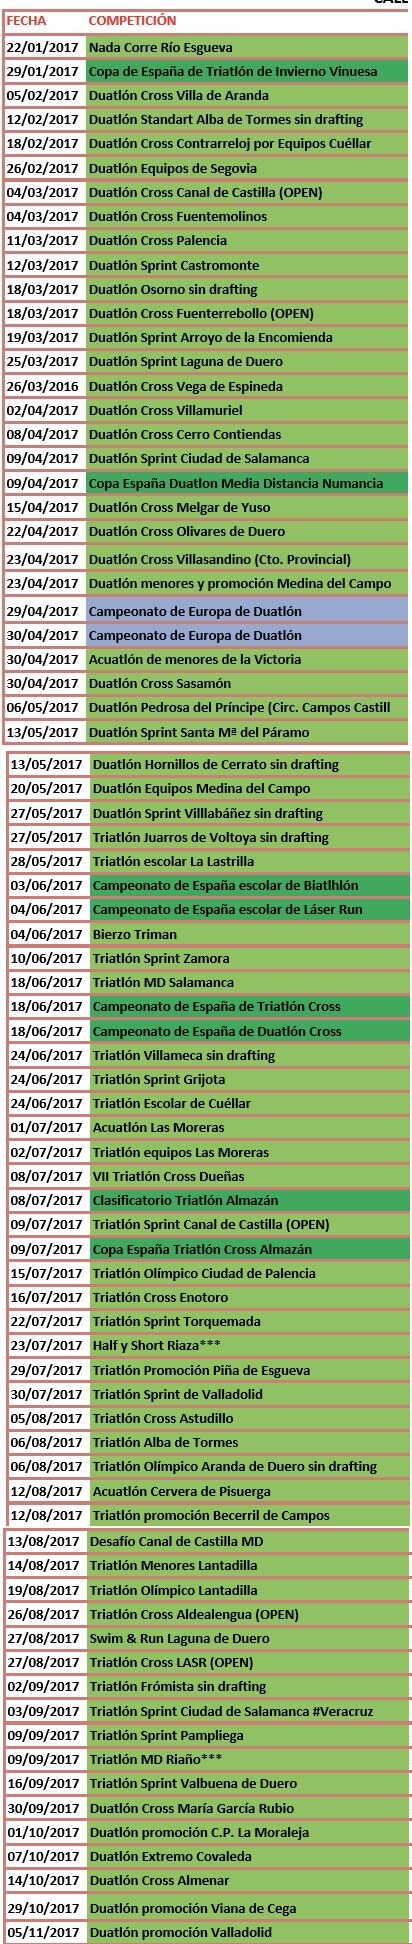 Castilla y León Triathlon Competitions Calendar 2017